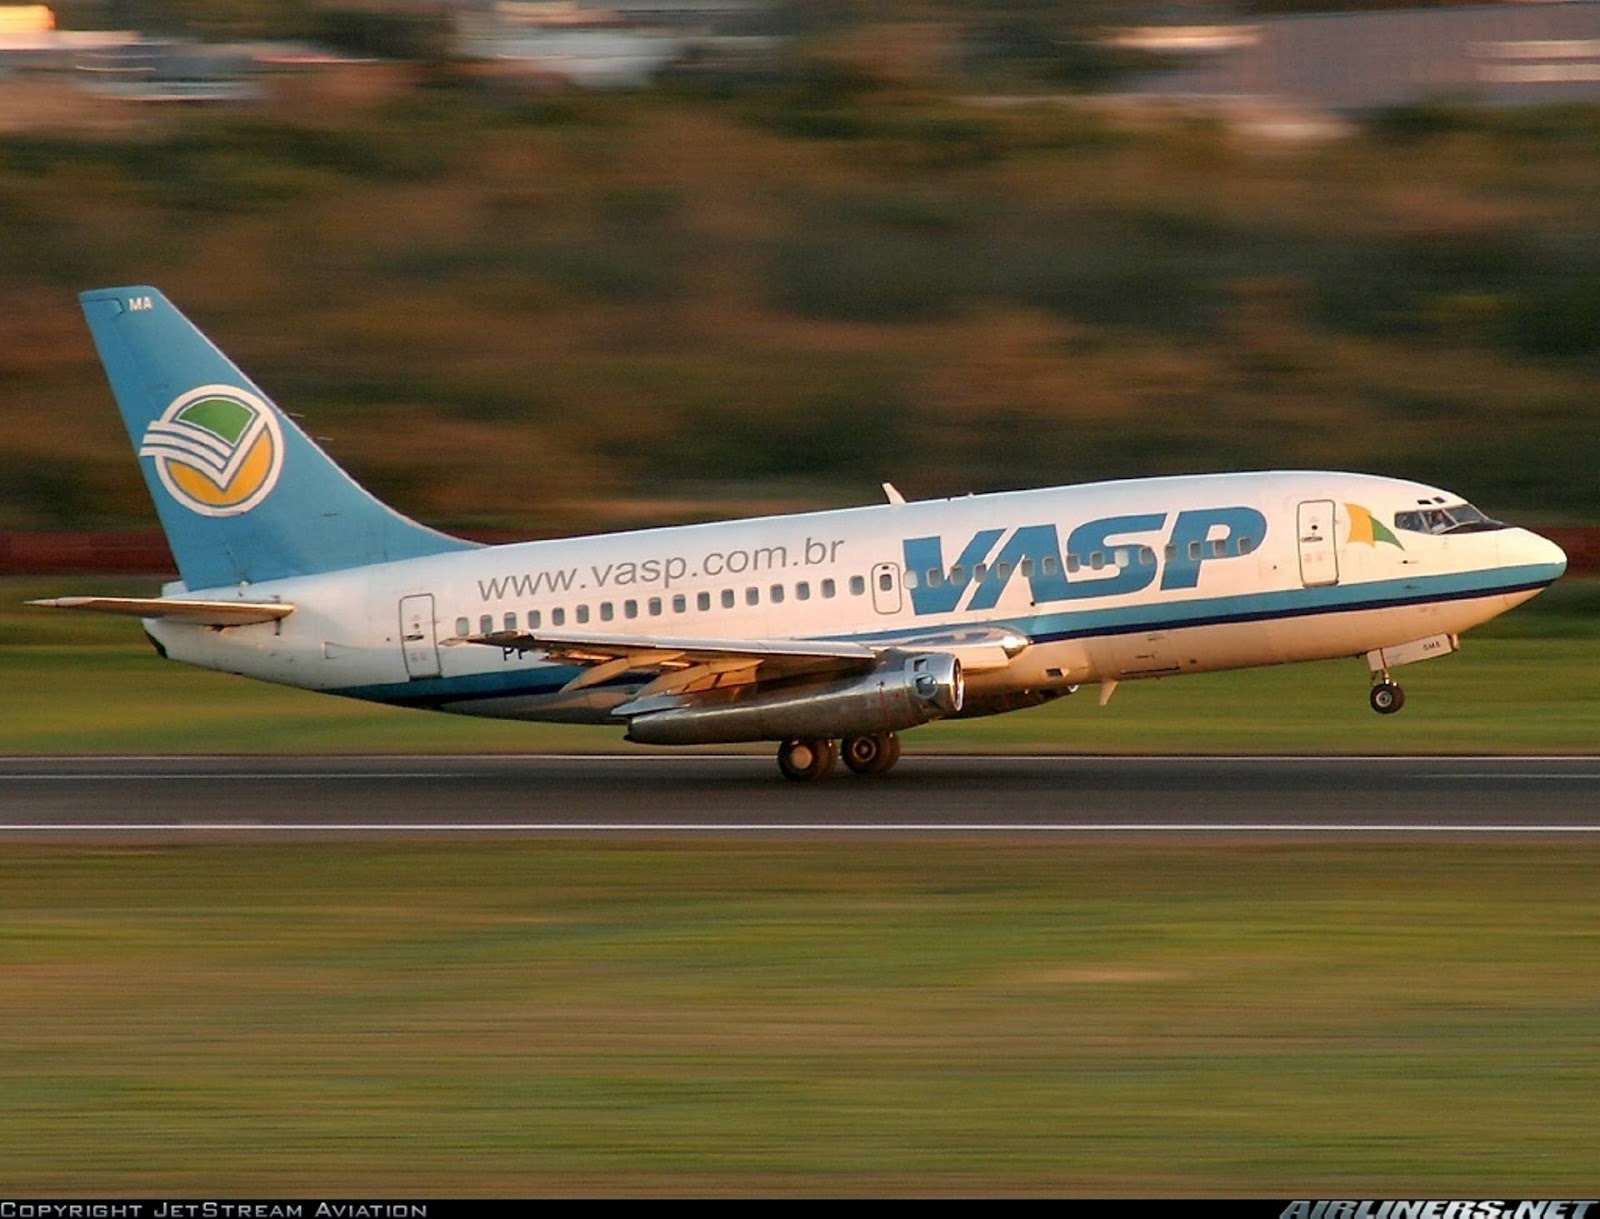 Cultura Aeronáutica: Os Boeing 737 da VASP: 36 anos no ar